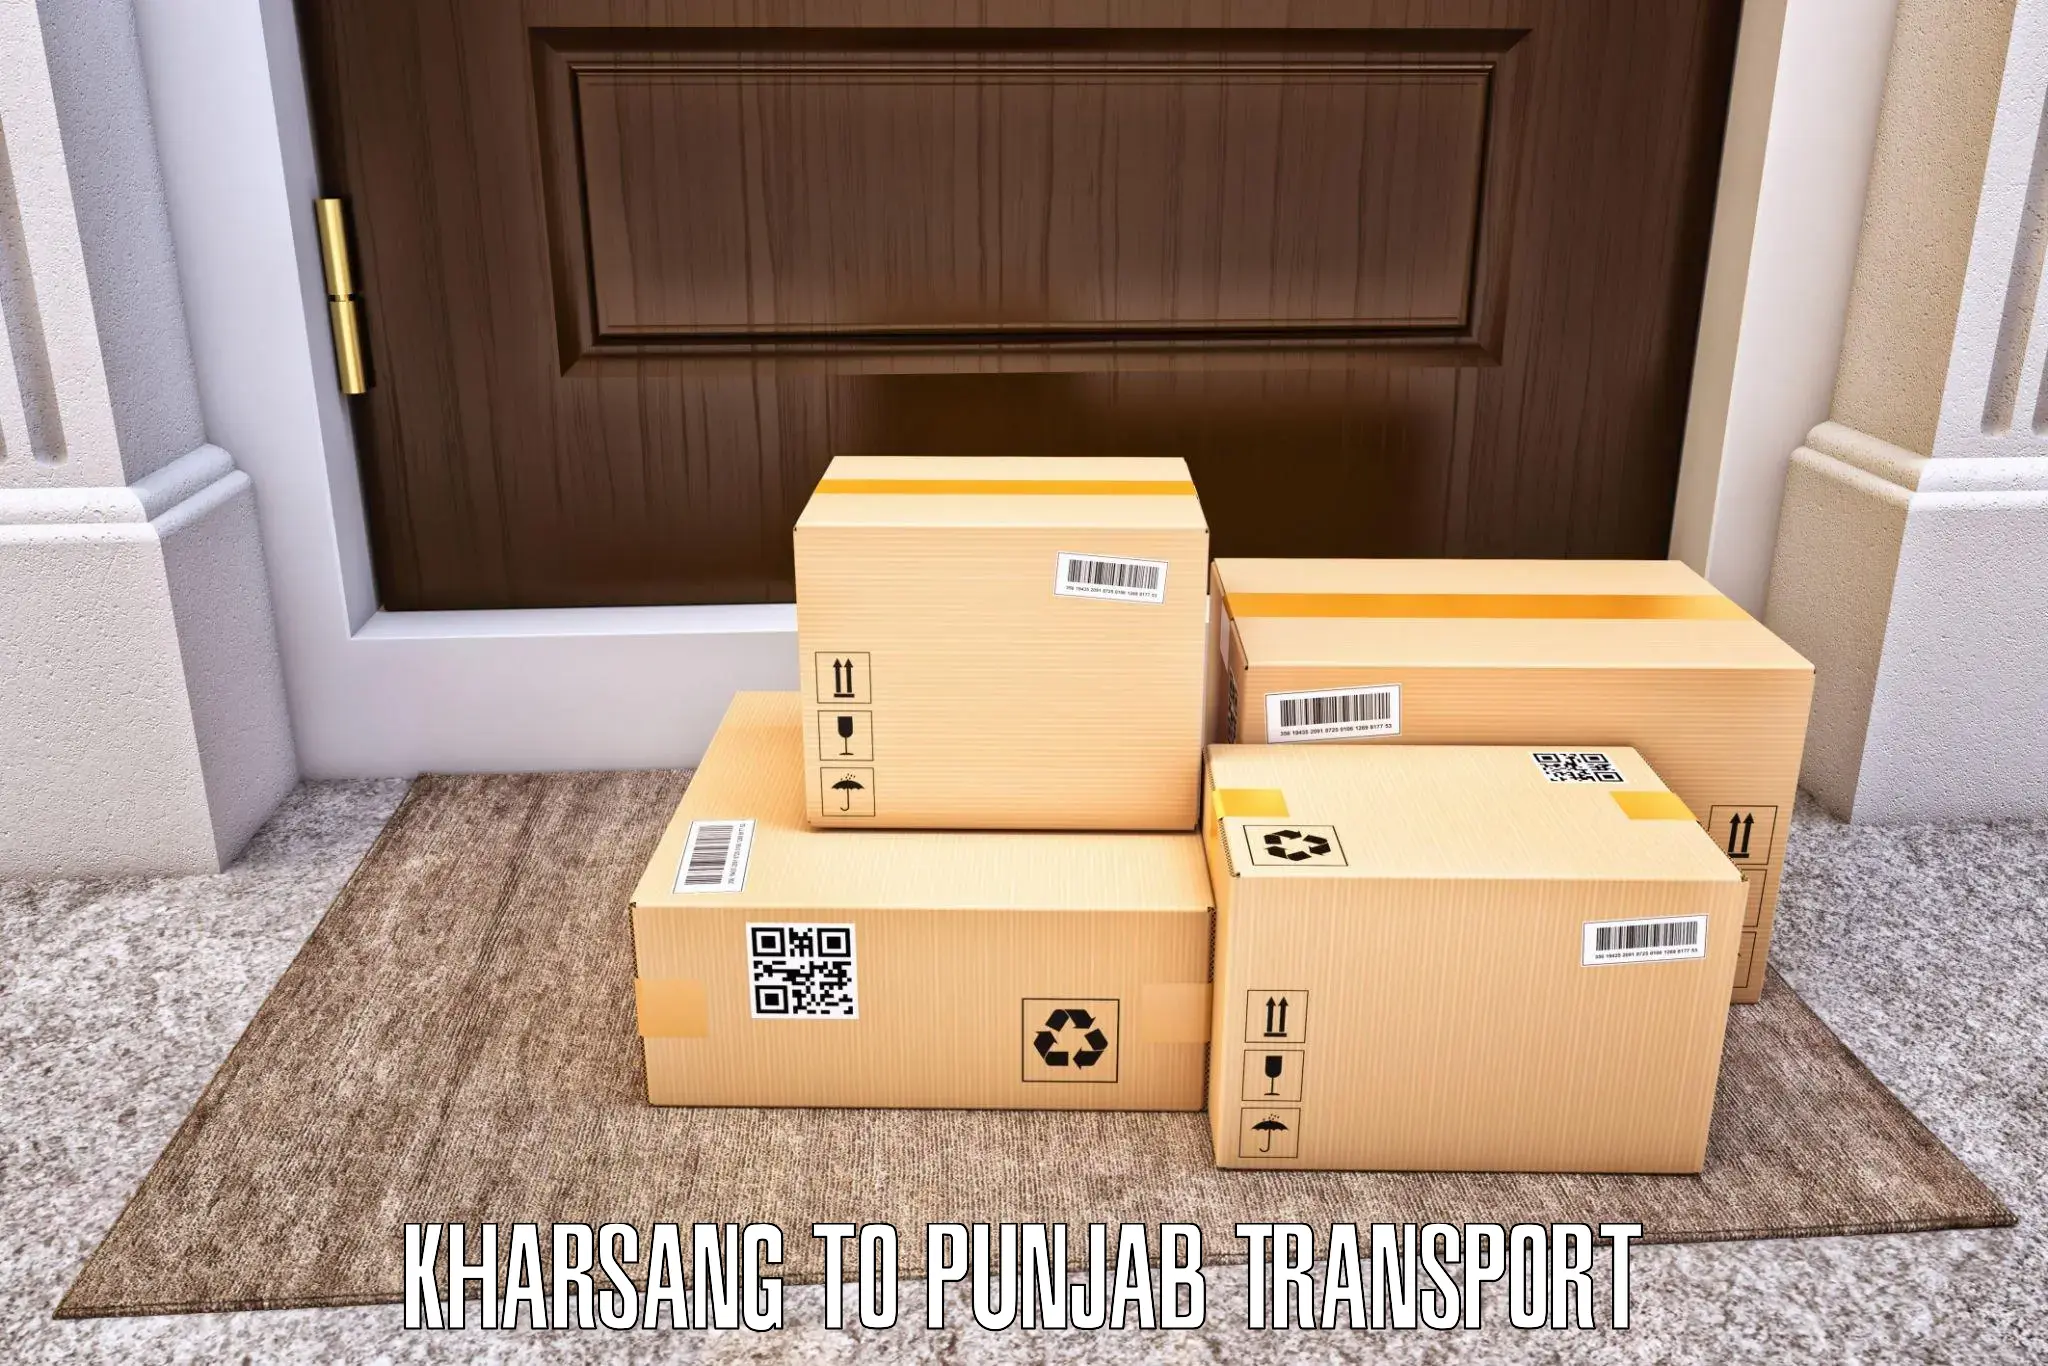 Pick up transport service Kharsang to Tarn Taran Sahib